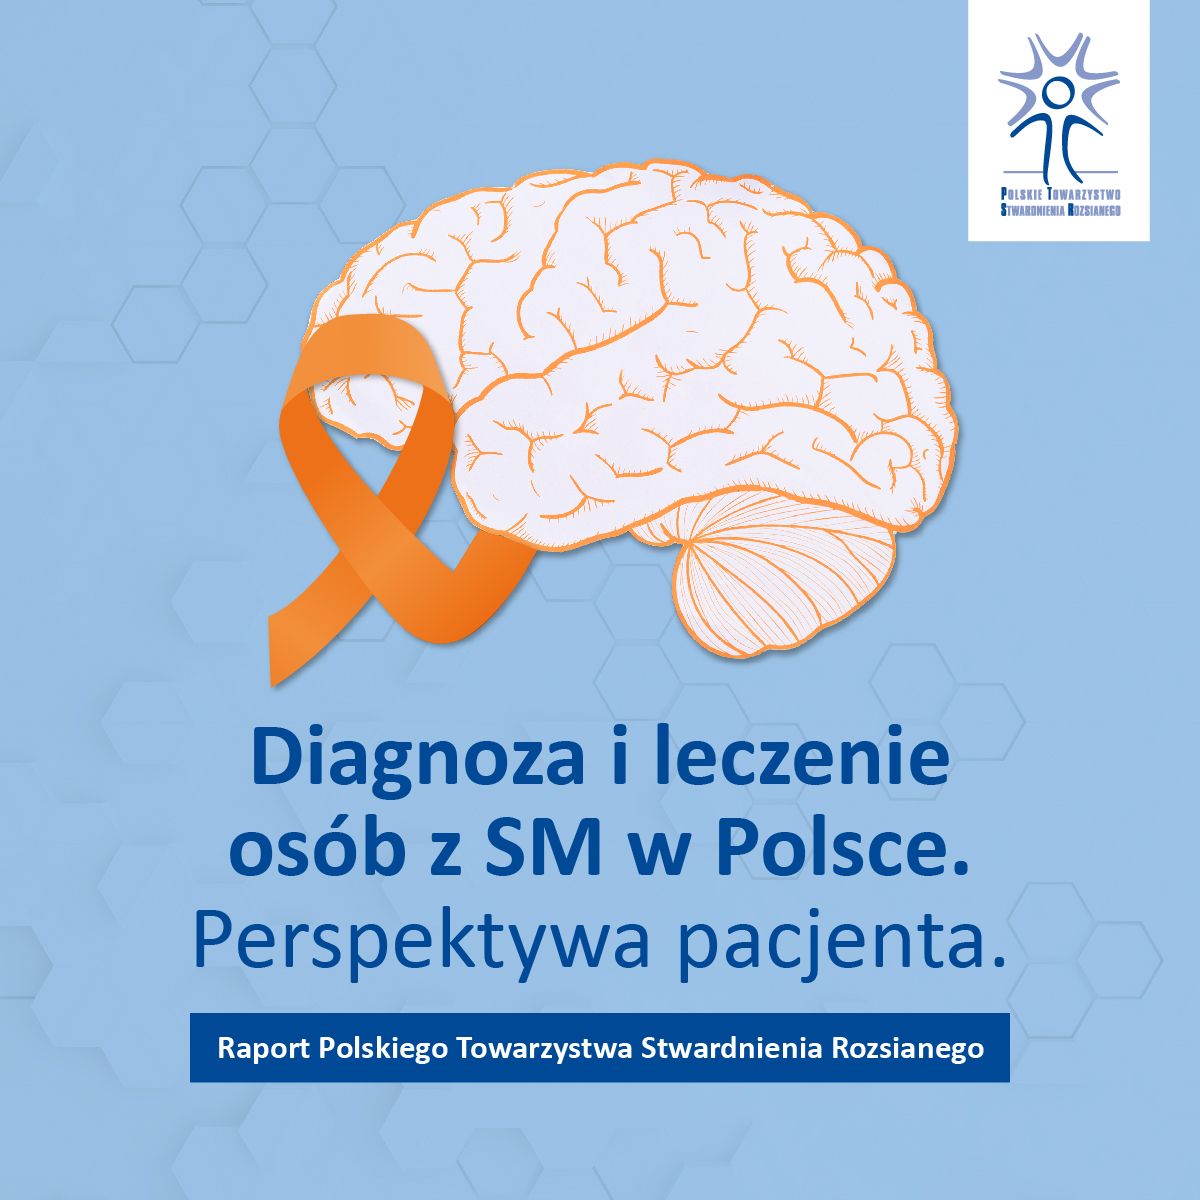 Badanie "Diagnoza i leczenie osób z SM w Polsce"